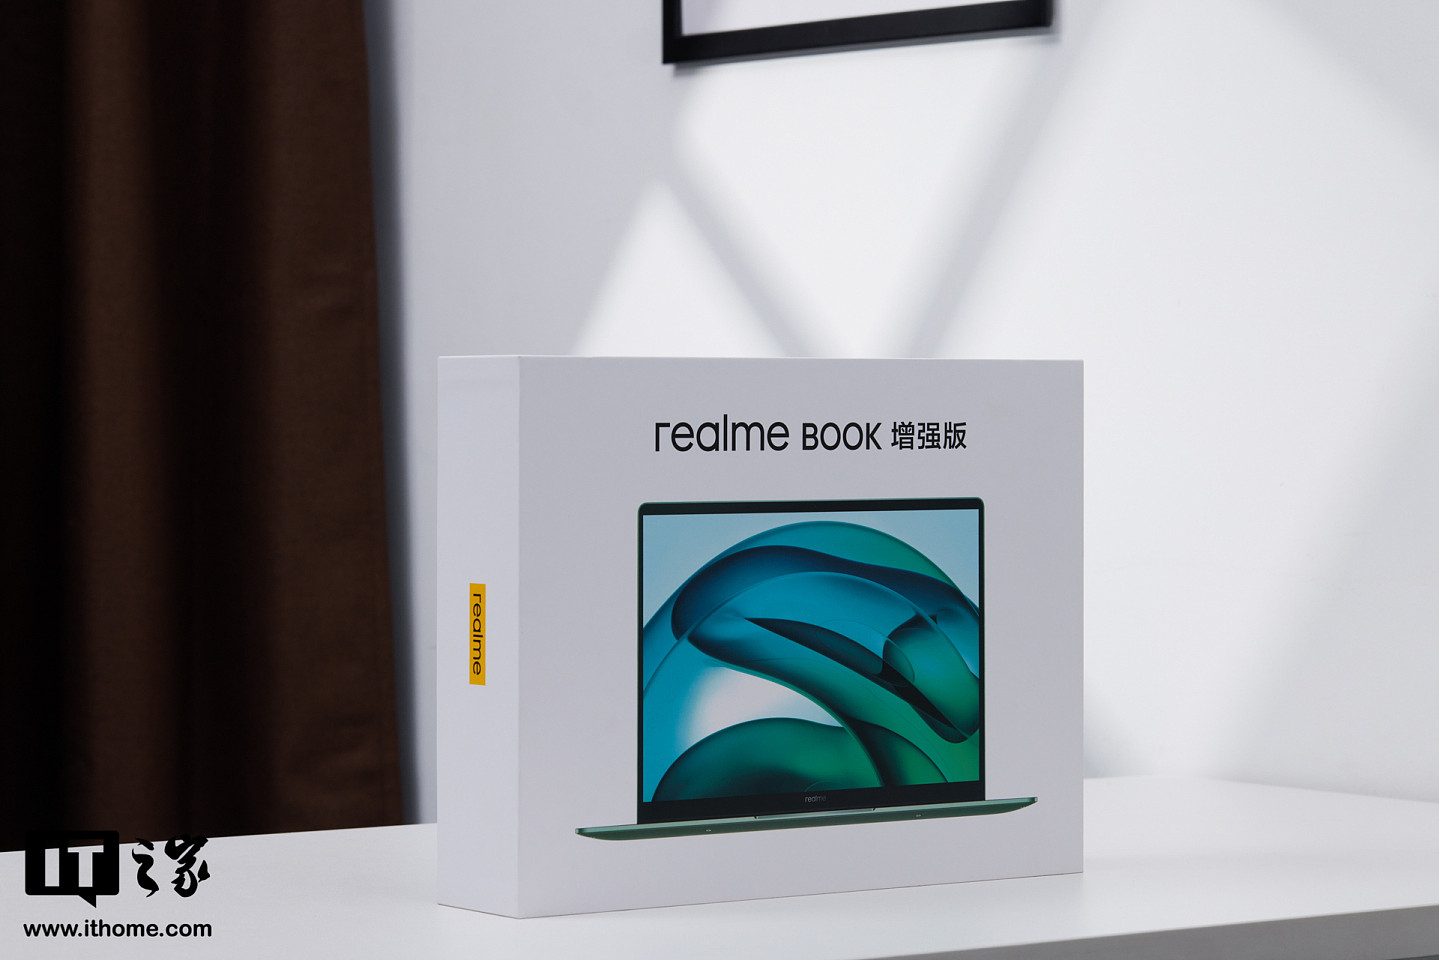 【IT之家开箱】realme Book 增强版笔记本天空青色图赏 - 1